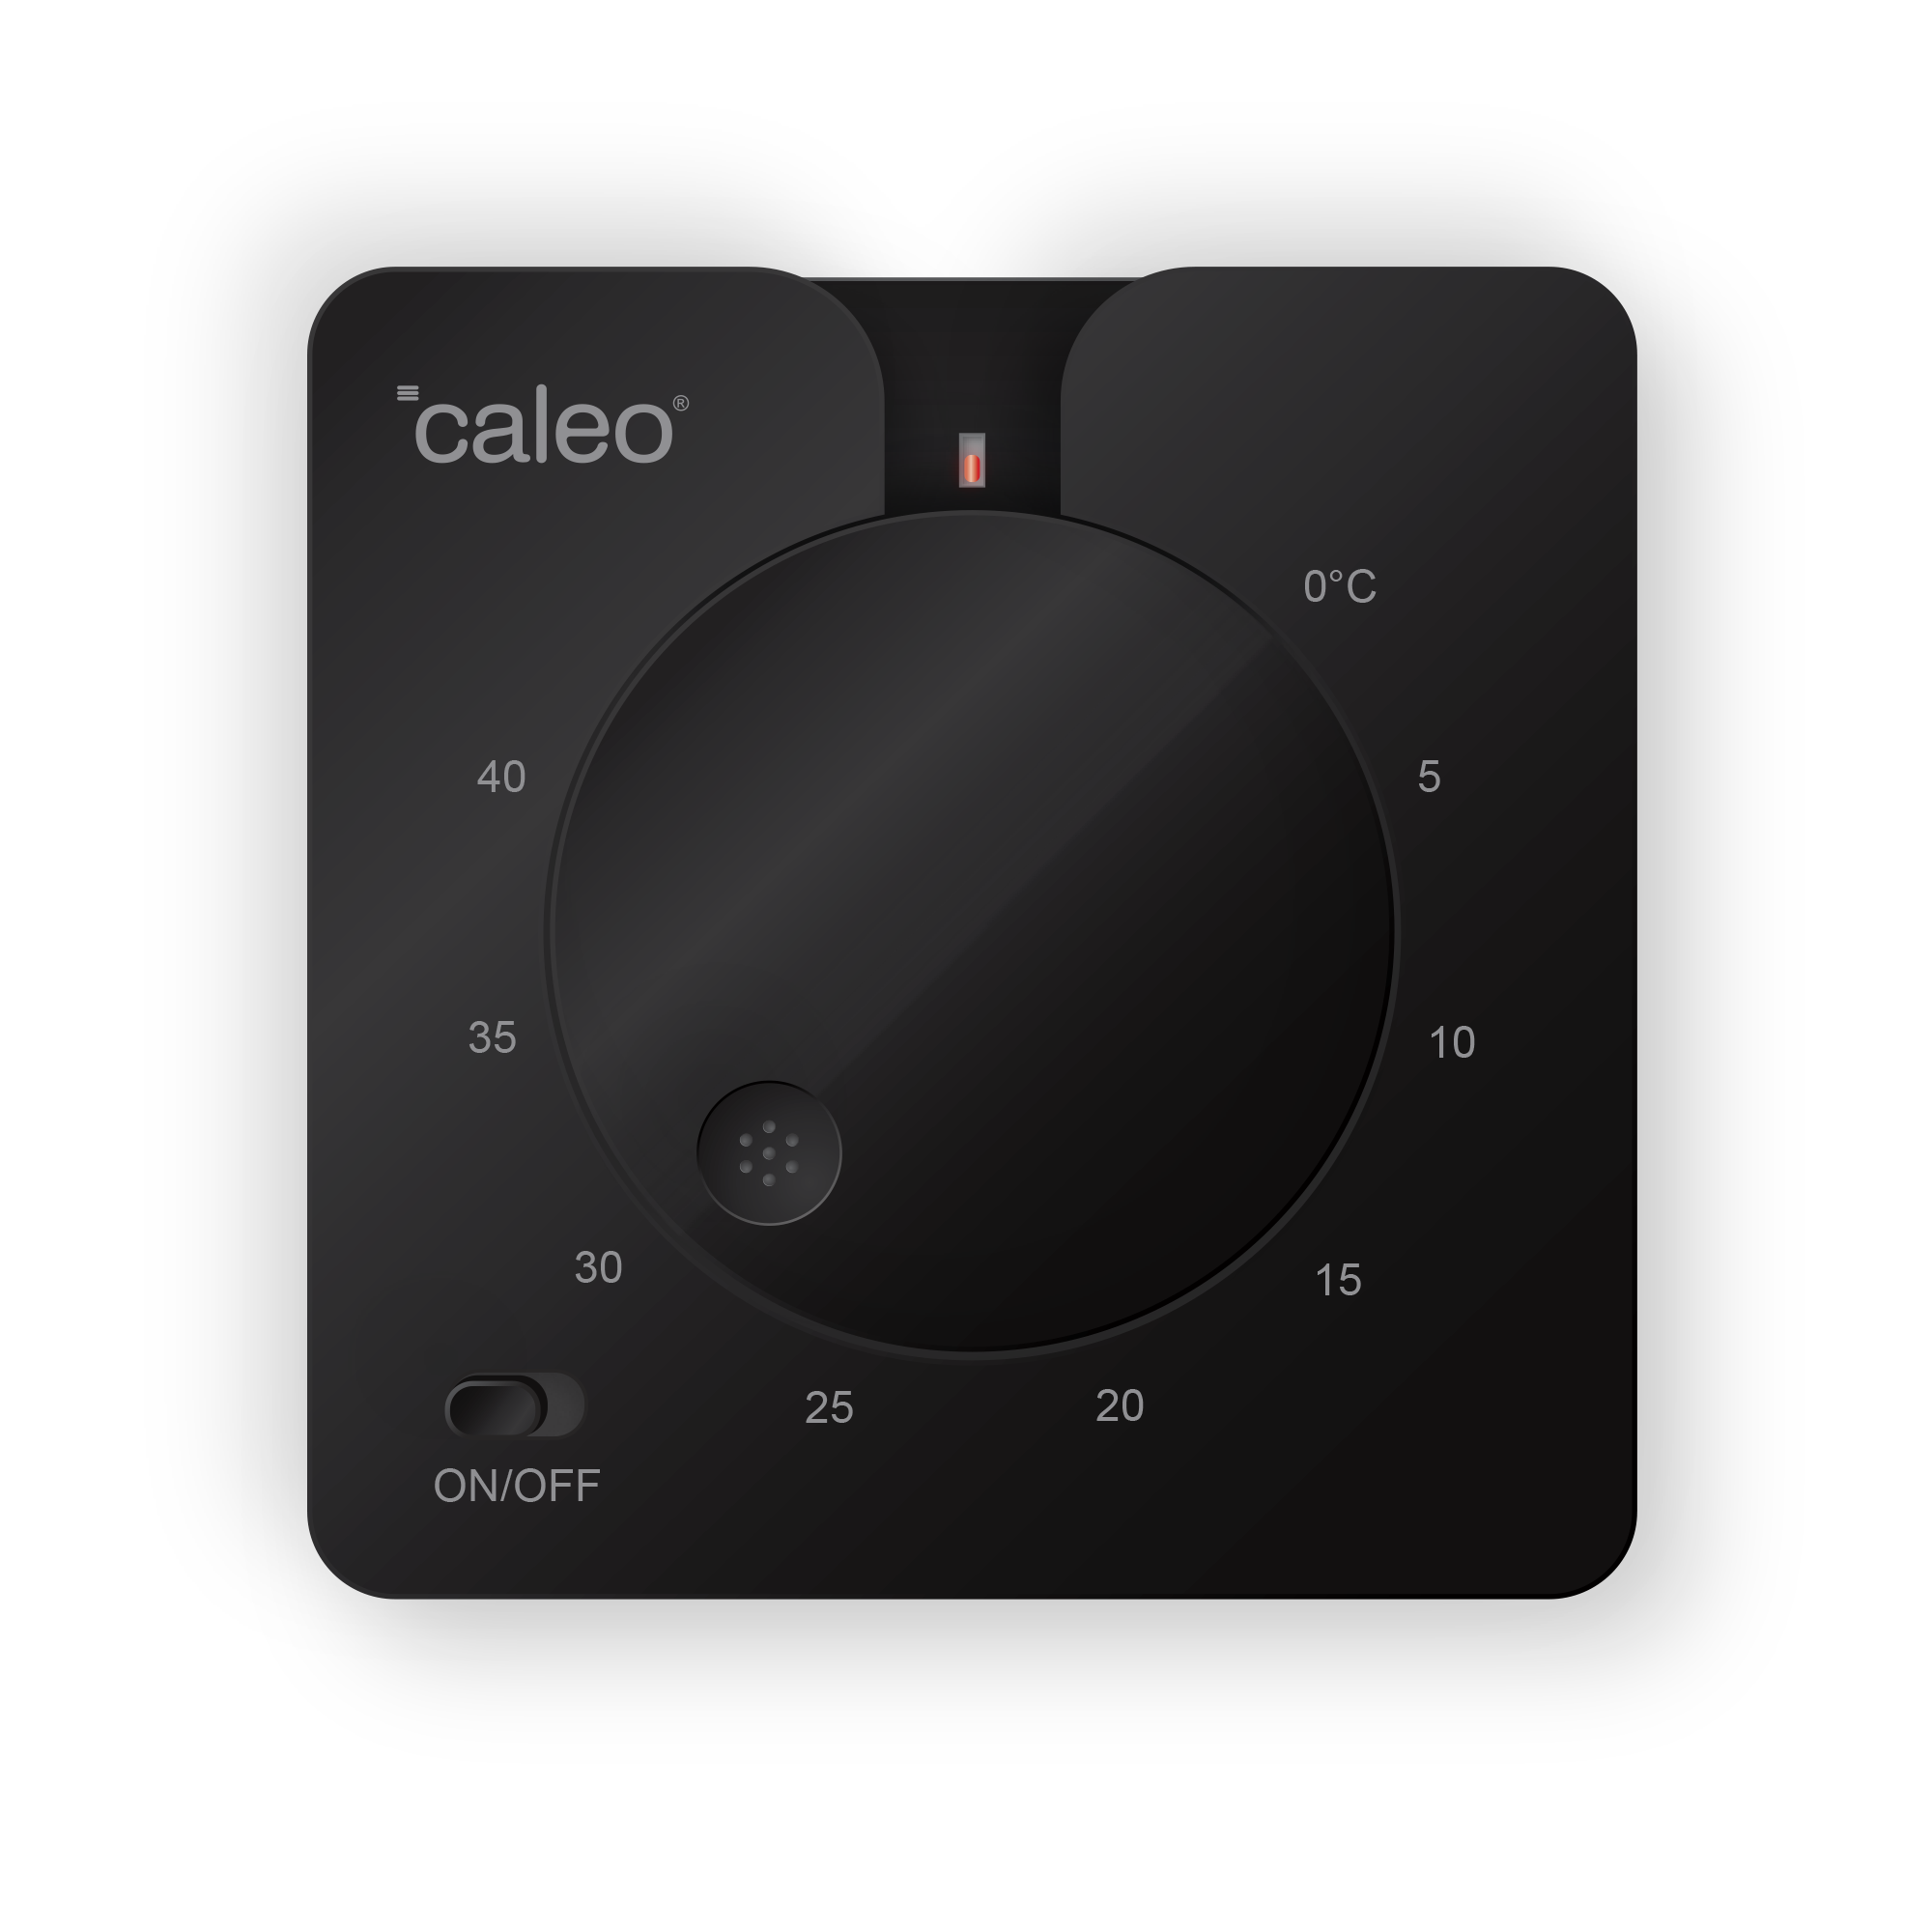 Терморегулятор Caleo C430 встраиваемый аналоговый, 3,5 кВт